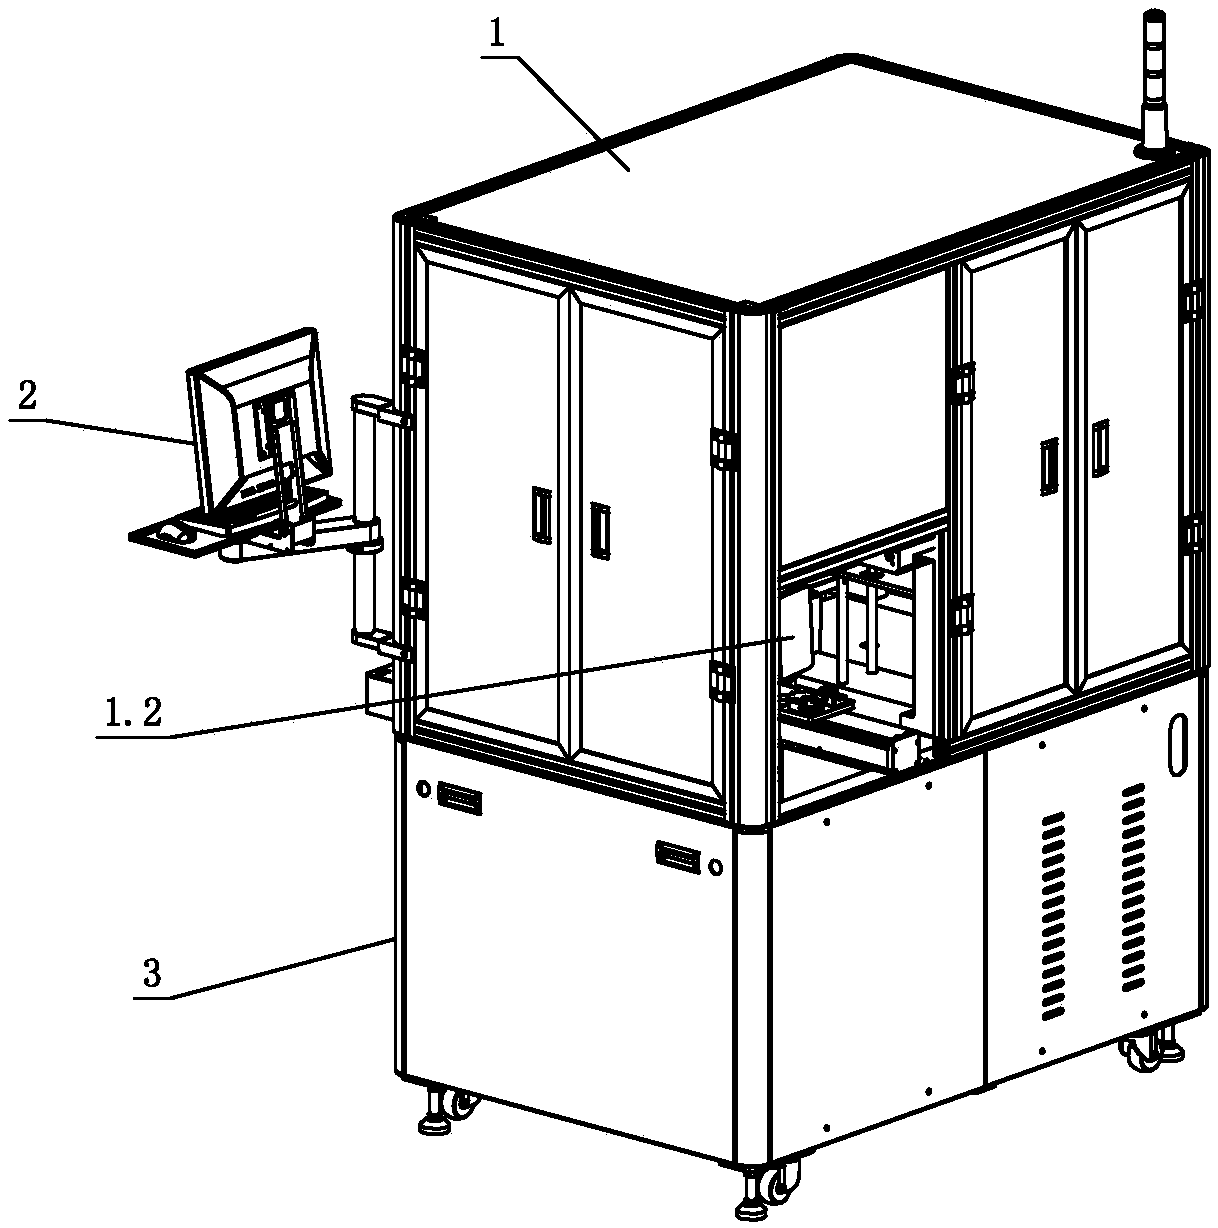 Automatic dispensing equipment